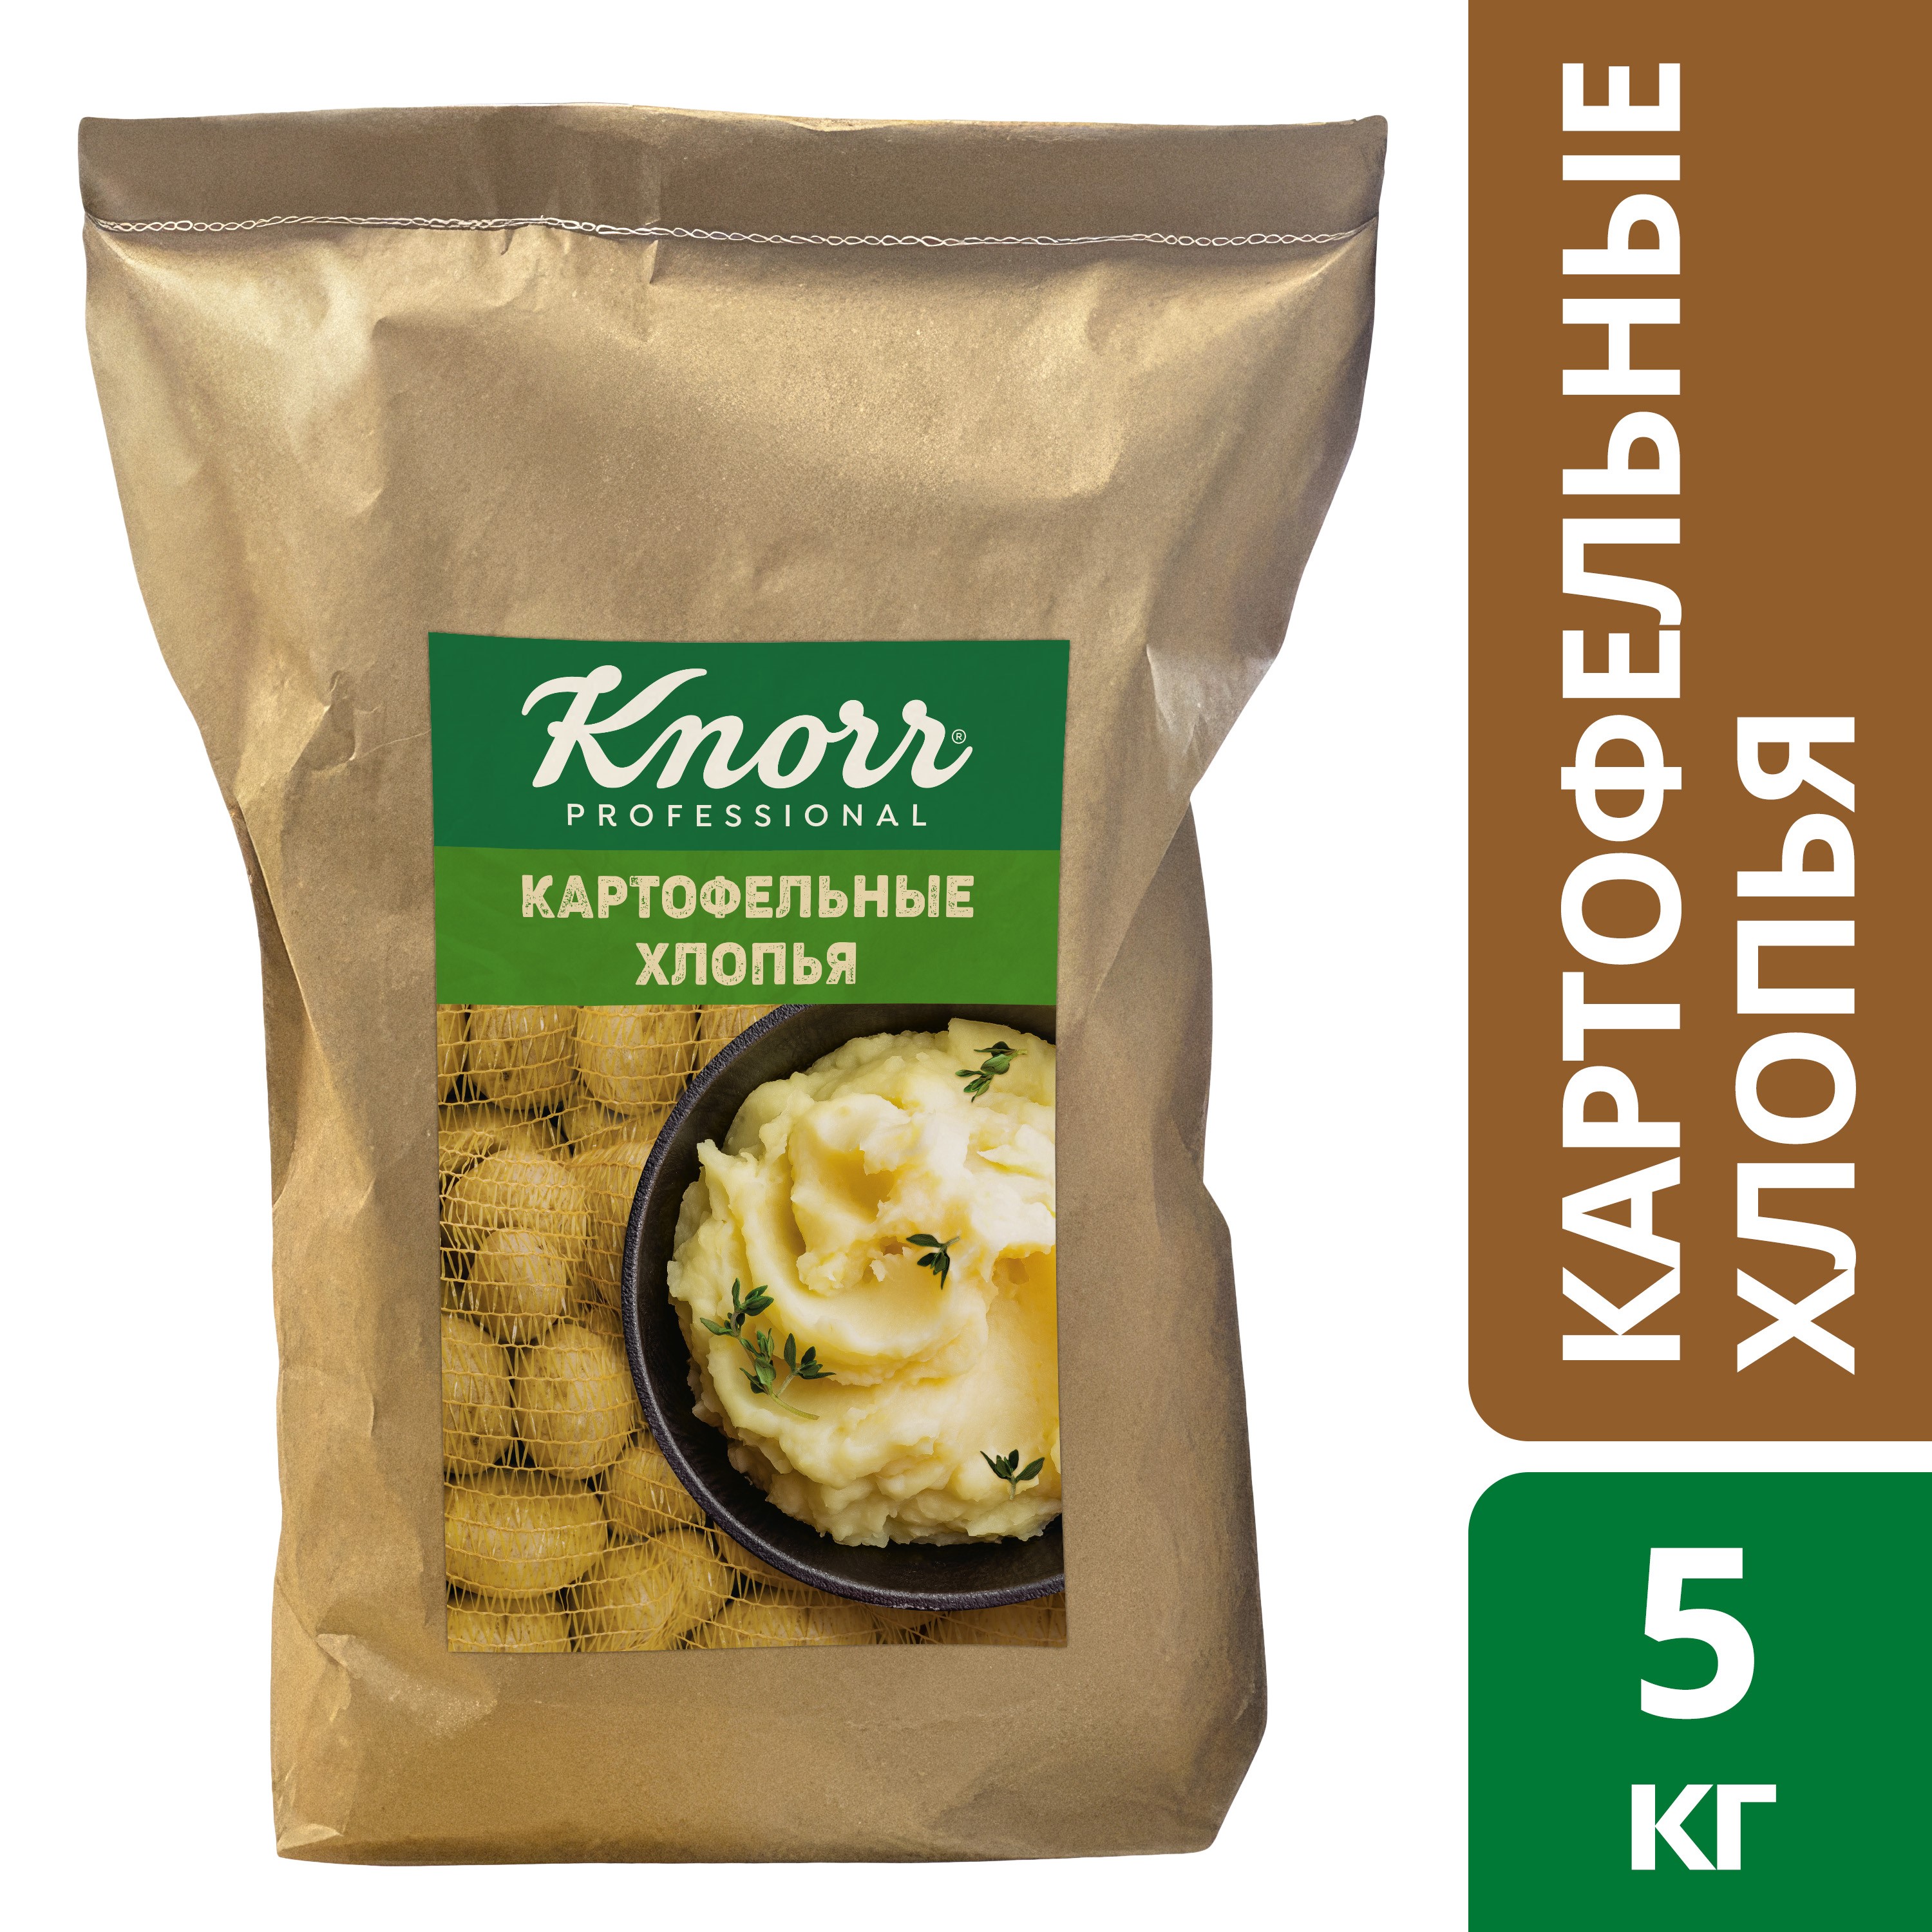 KNORR PROFESSIONAL Картофельные хлопья (5кг) - 100% натуральный картофель и многофункциональный ингредиент для приготовления различных блюд.